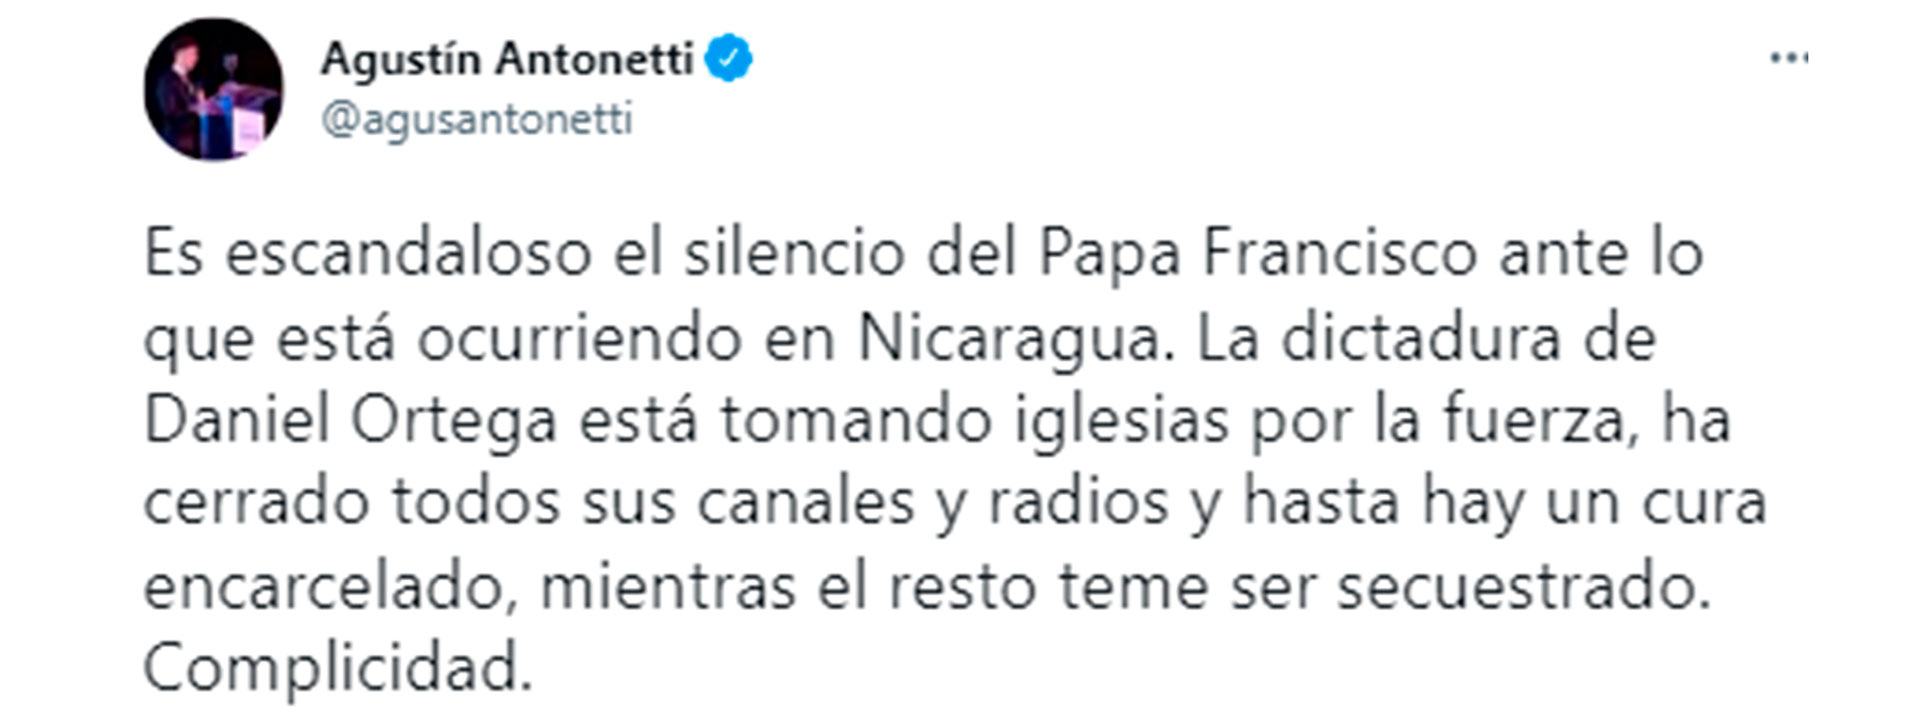 El mensaje de Agustín Antonetti en Twitter